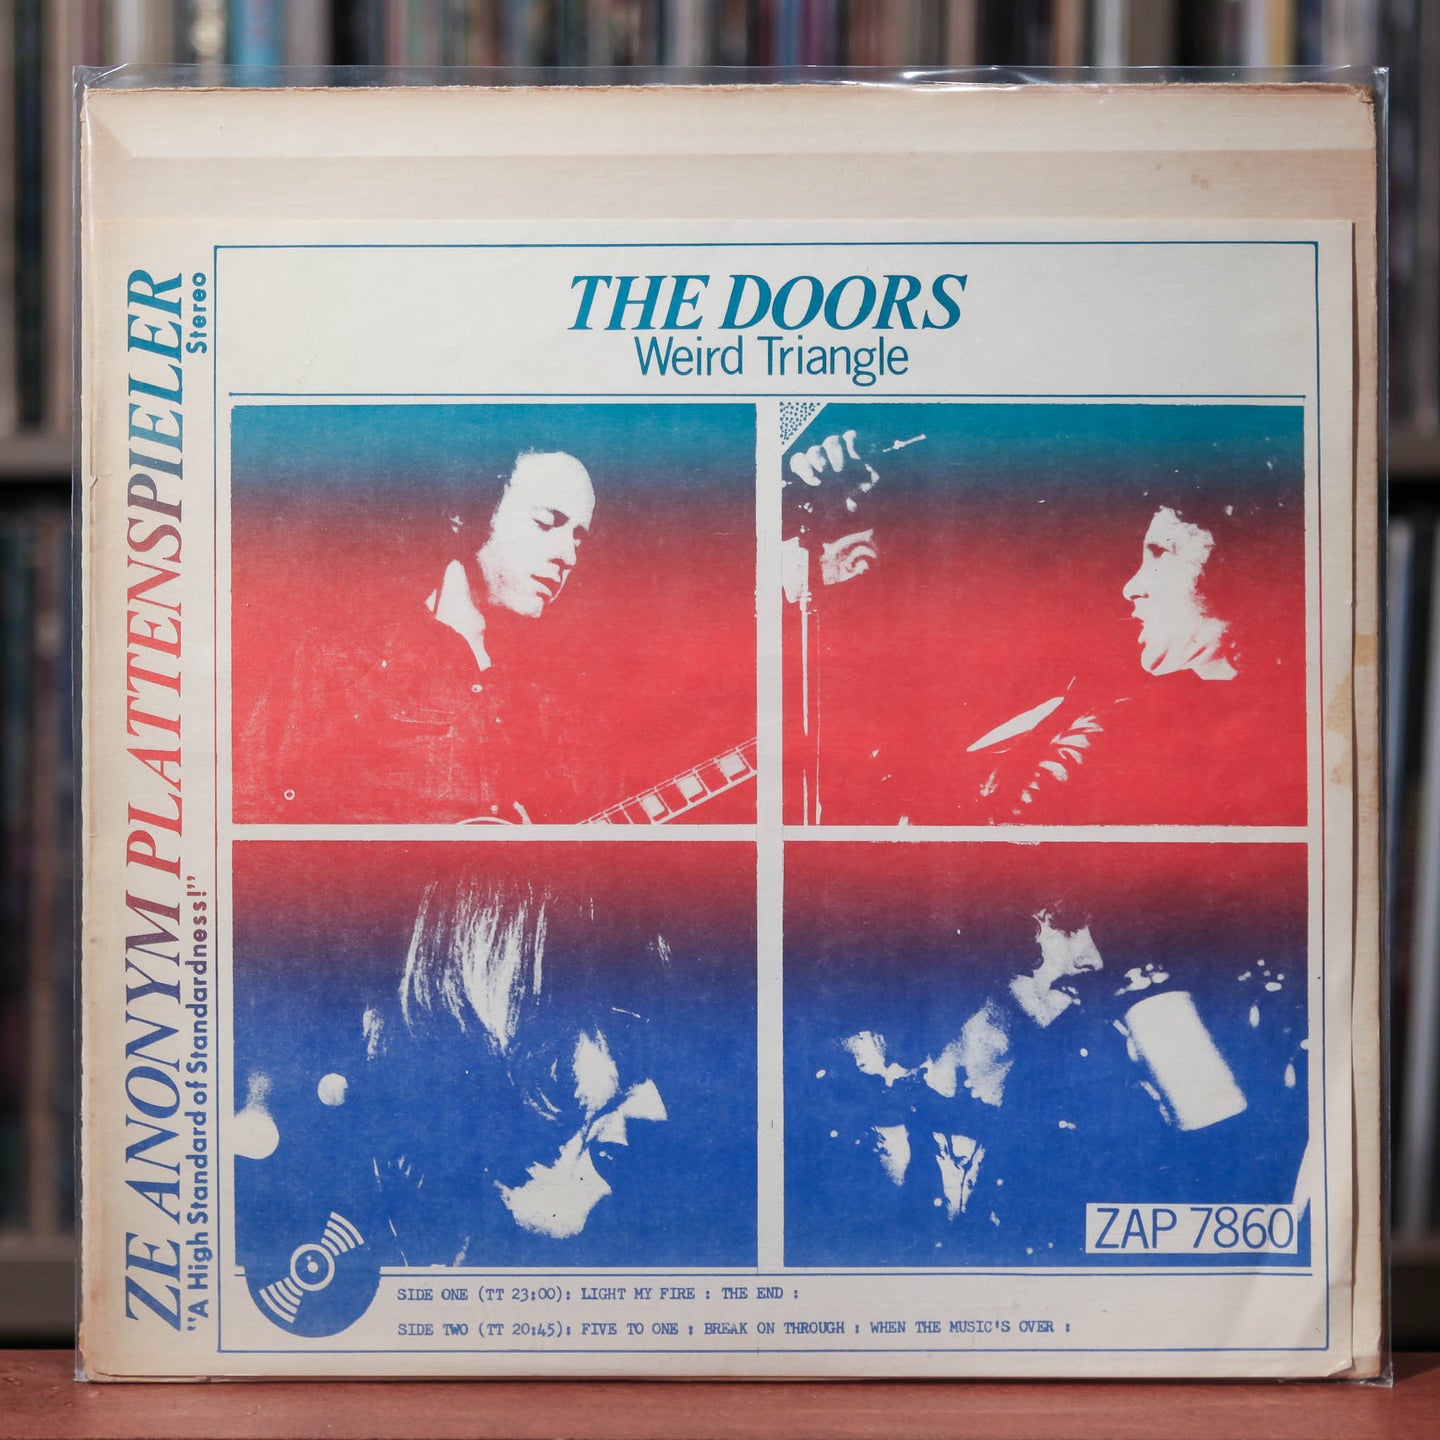 The Doors - Weird Triangle - 1968 Ze Anonym Plattenspieler, VG/VG